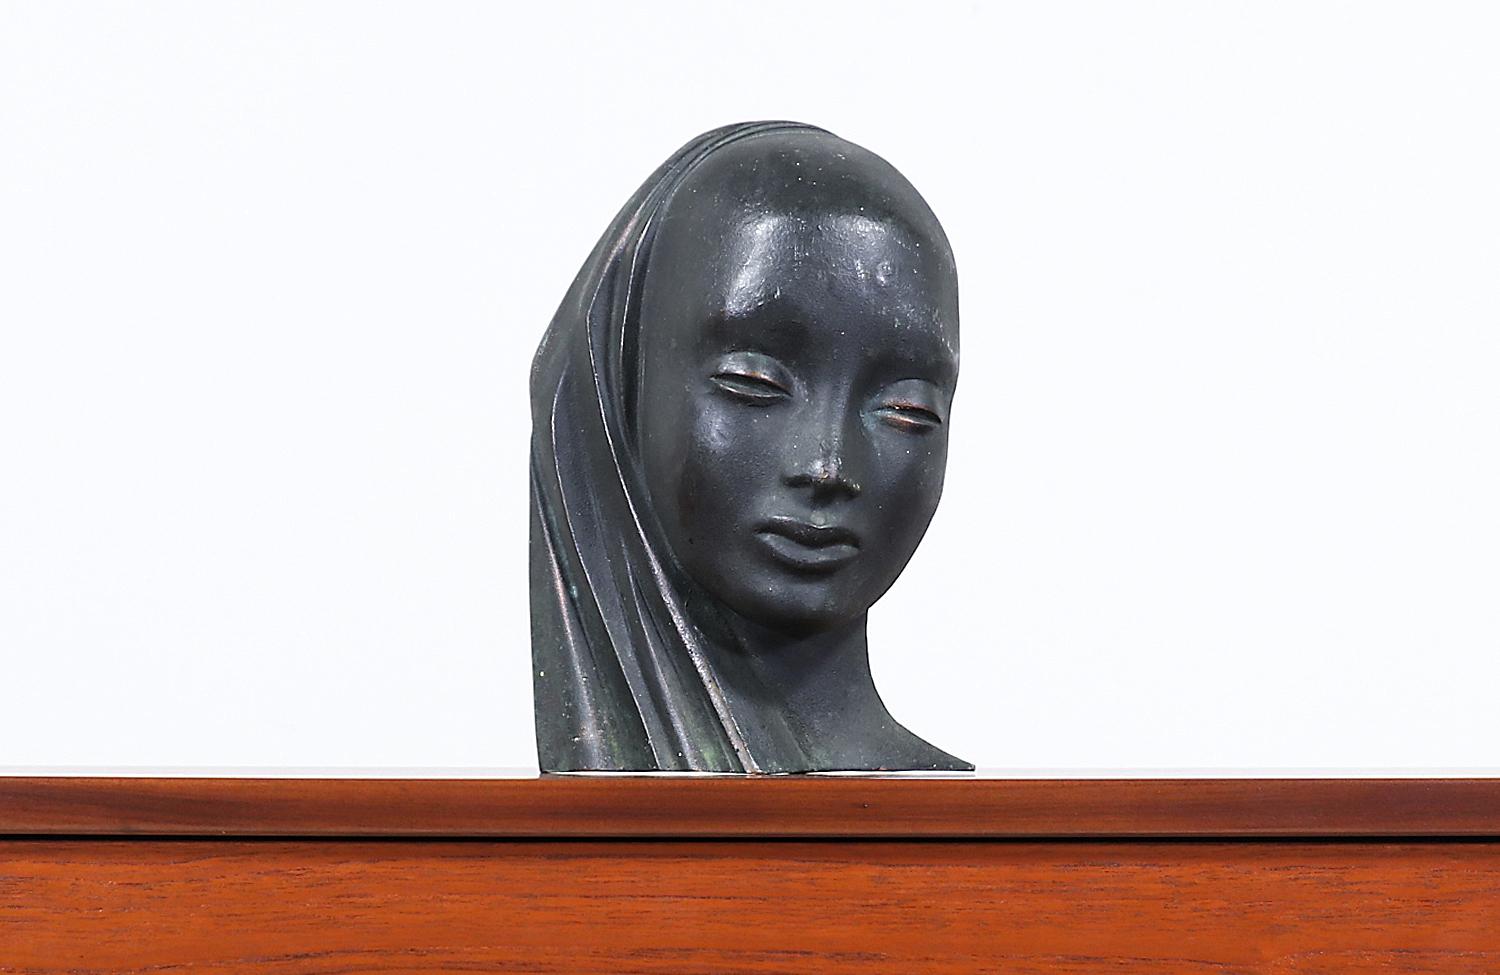 Mid-Century Modern bronze women bust sculpture.